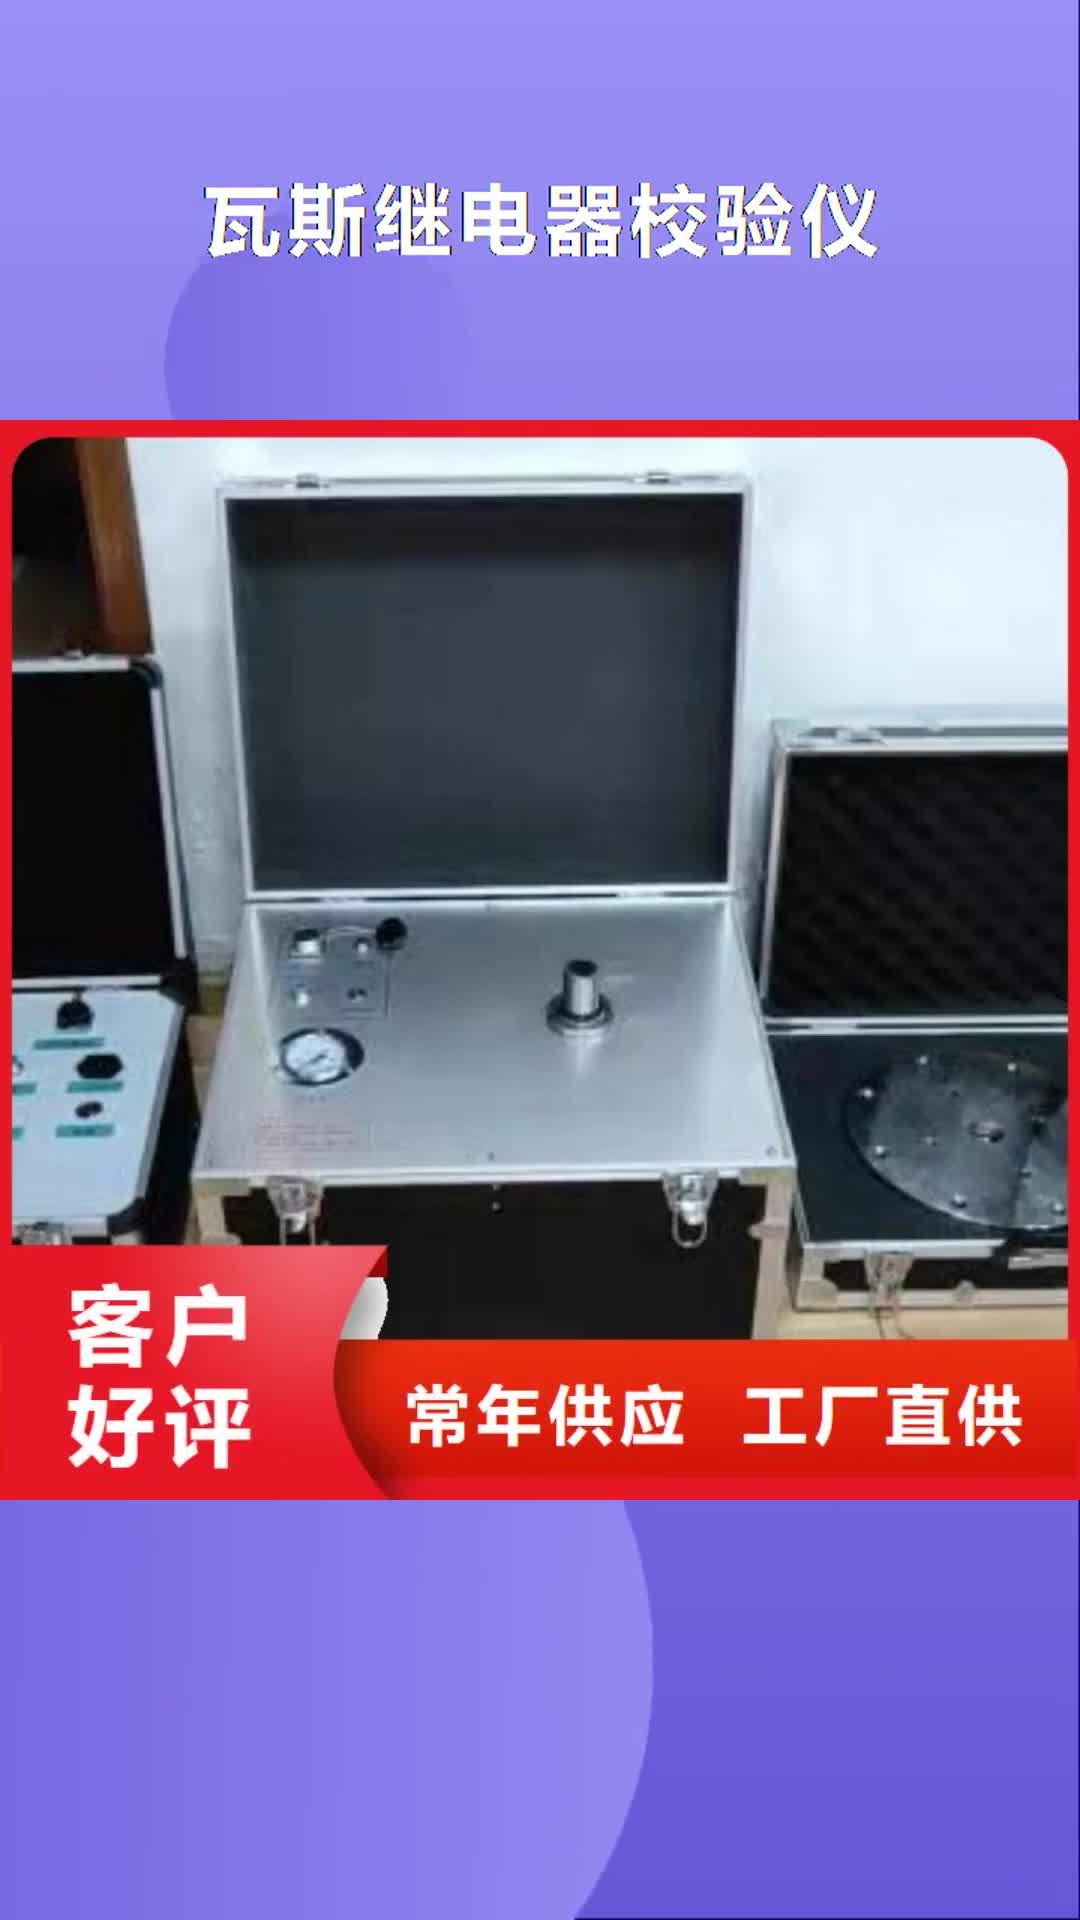 巴中【瓦斯继电器校验仪】,电力电气测试仪器用途广泛